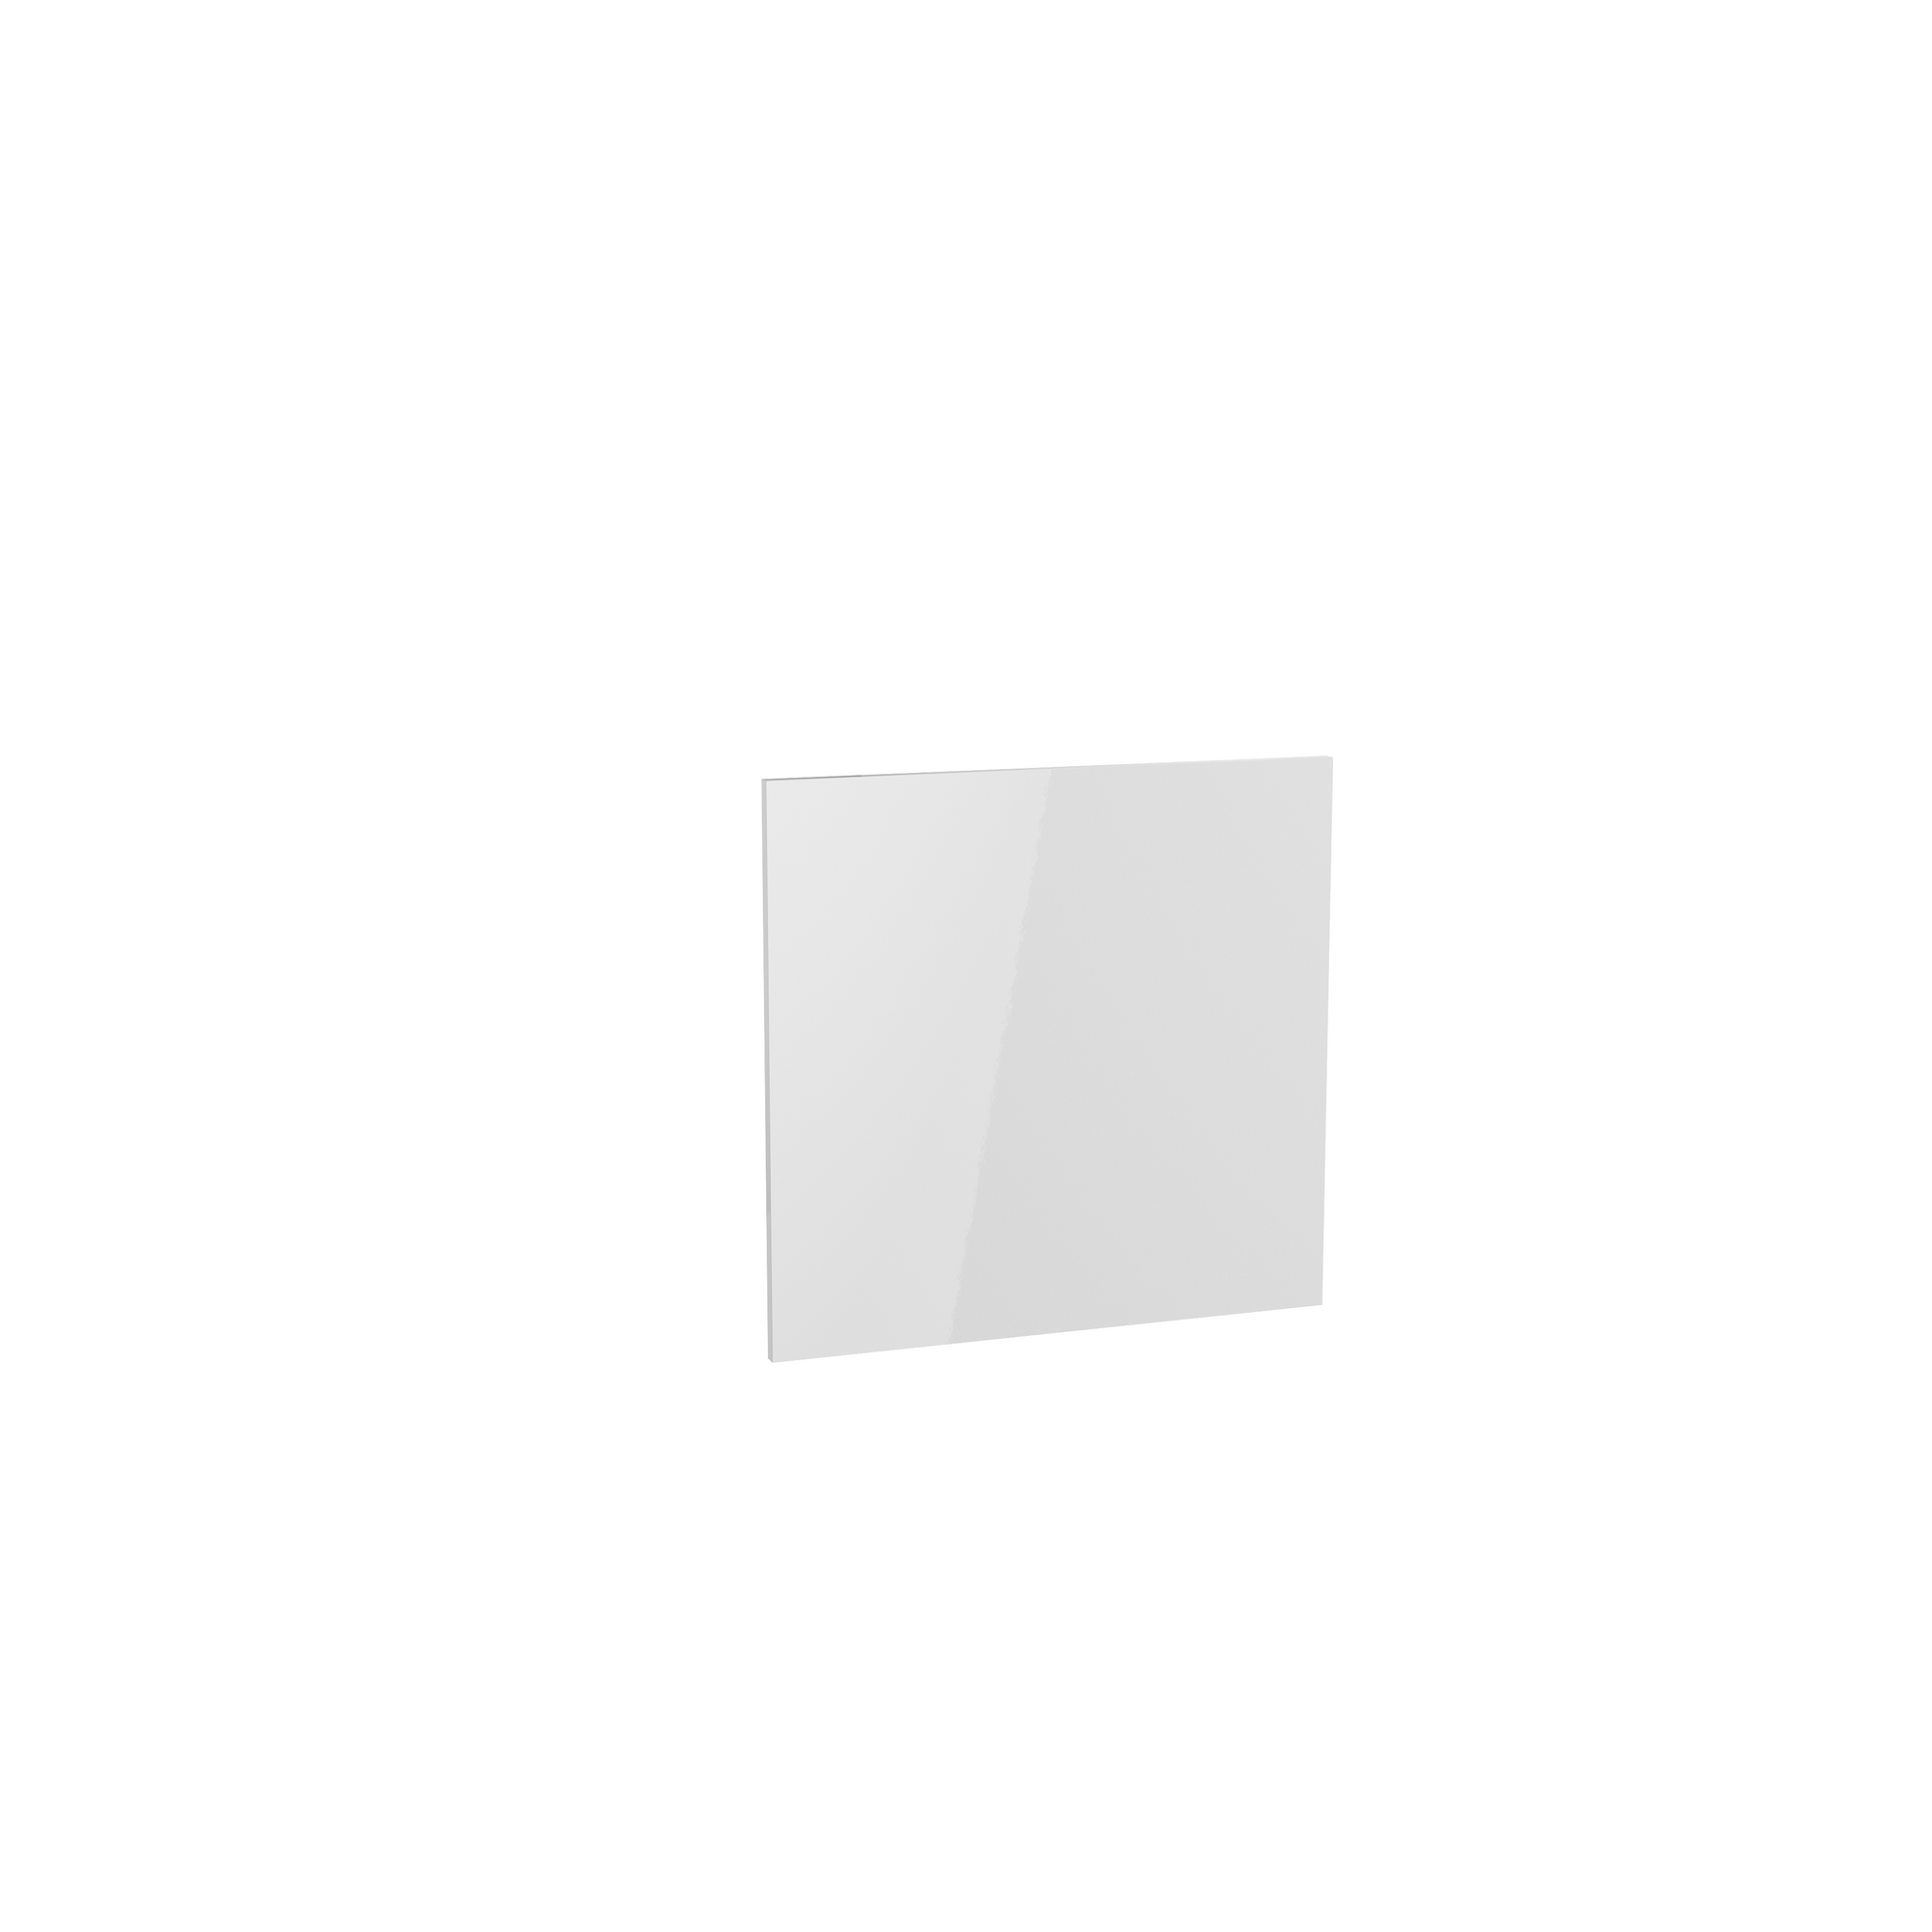 Tür für teilintegrierten Geschirrspüler 'Optikomfort Arvid986' weiß 60 x 57,2 x 1,6 cm + product picture